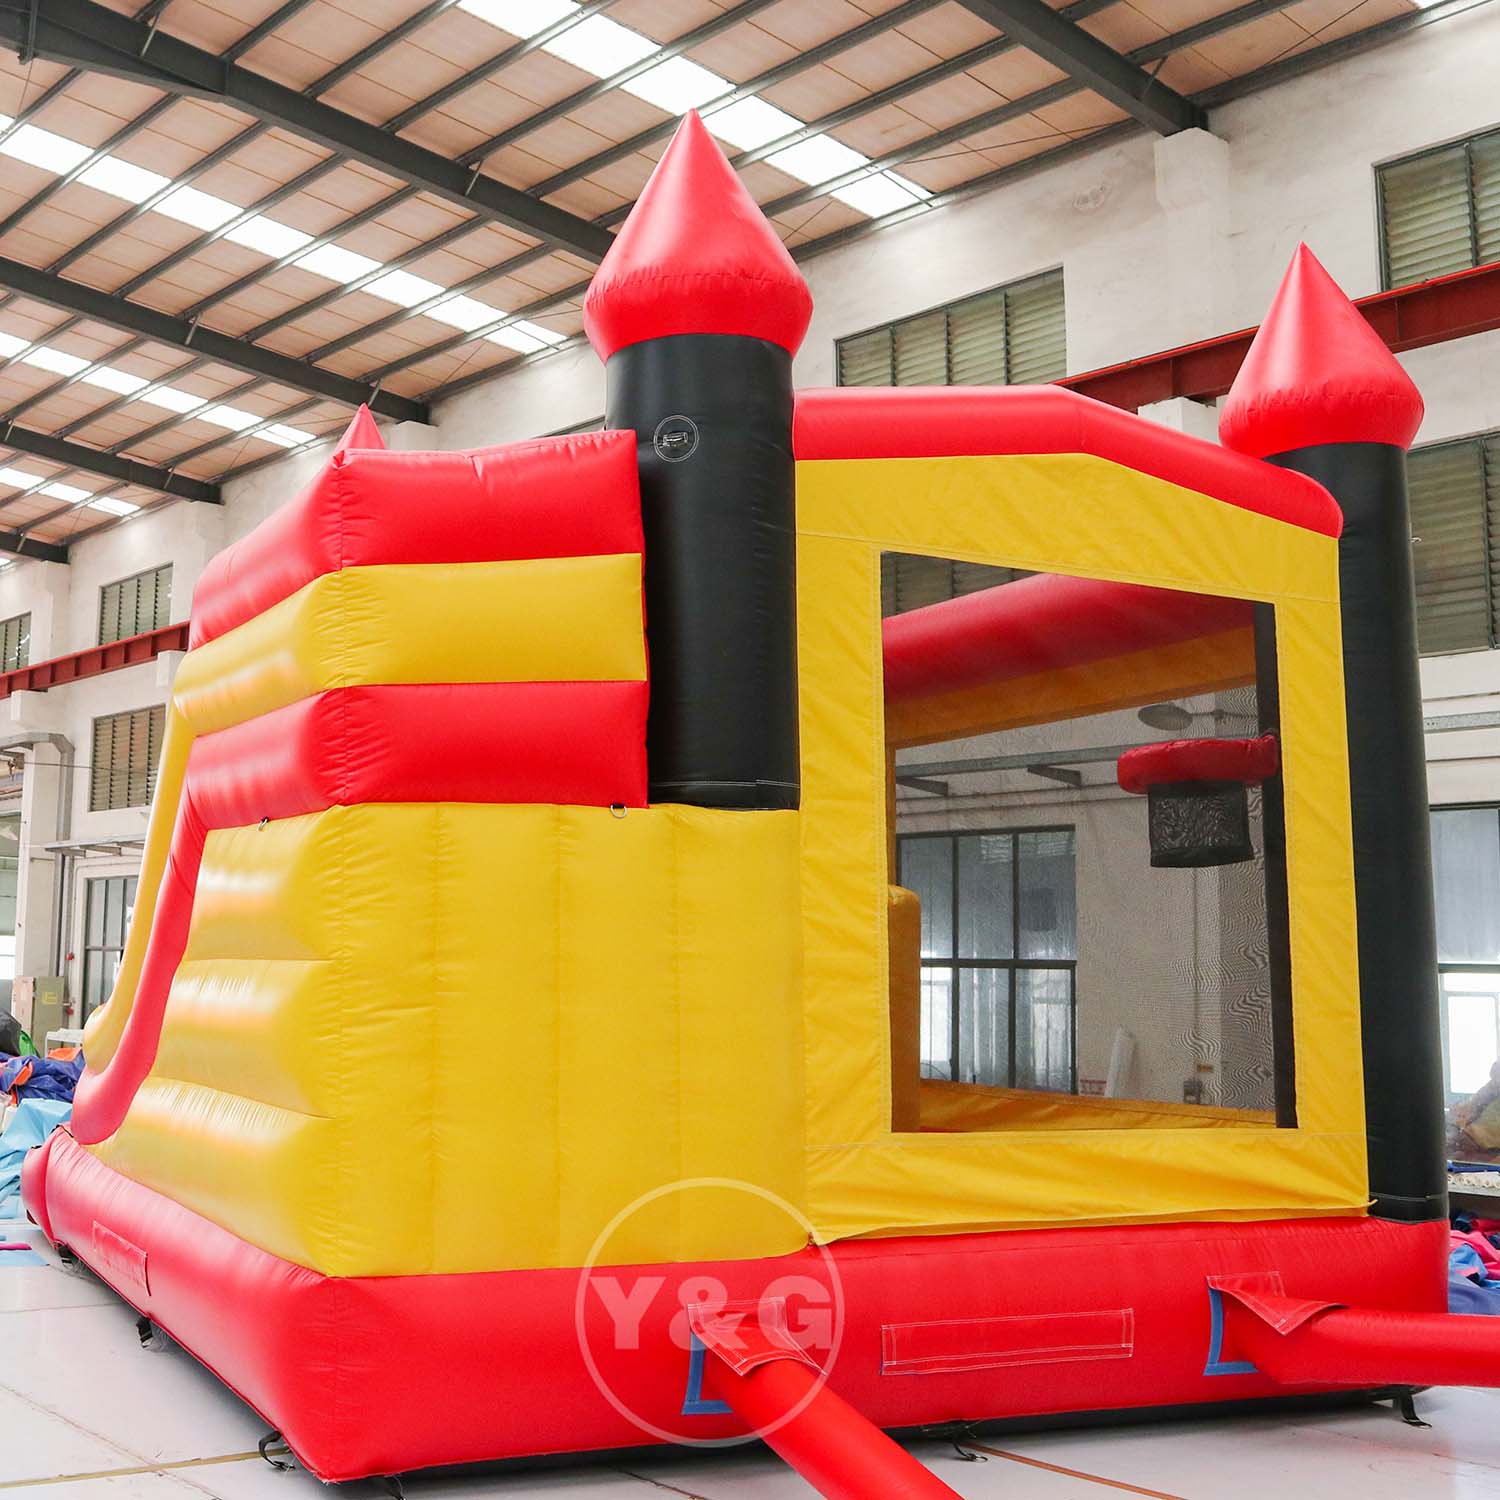 Firefighting Inflatable Bounce HouseYG-151